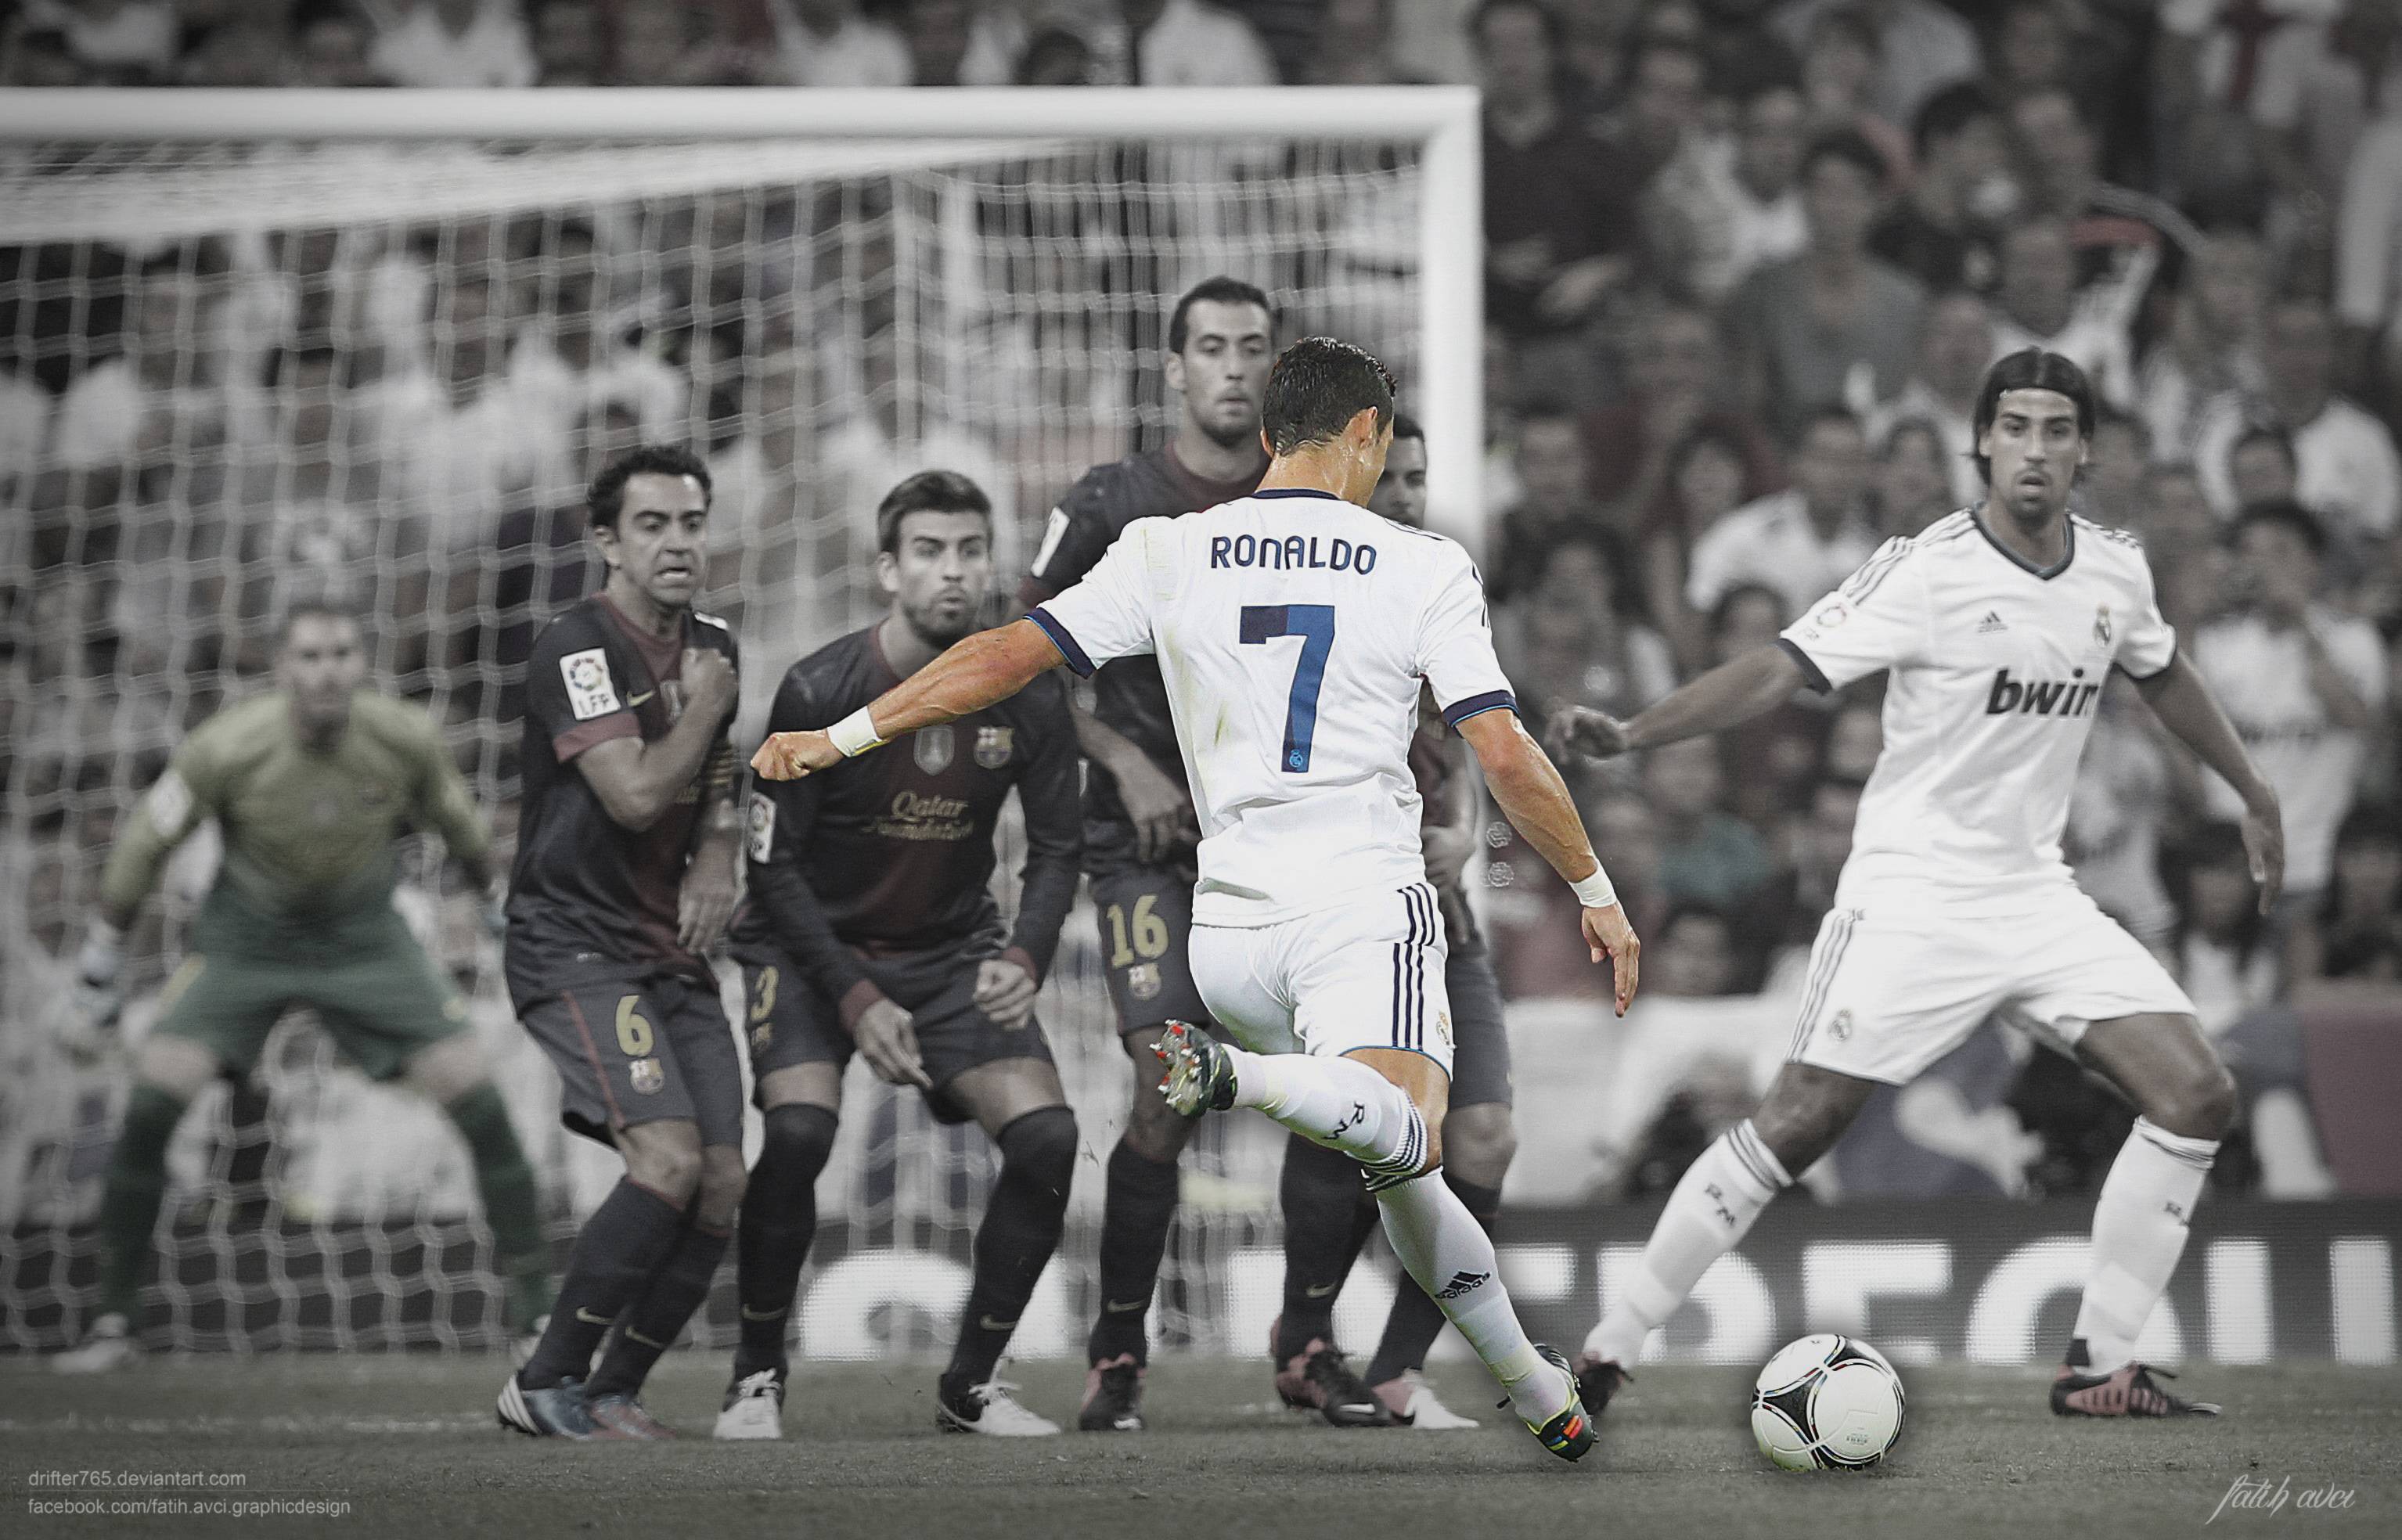 Cristiano Ronaldo Free Kick Barcelona